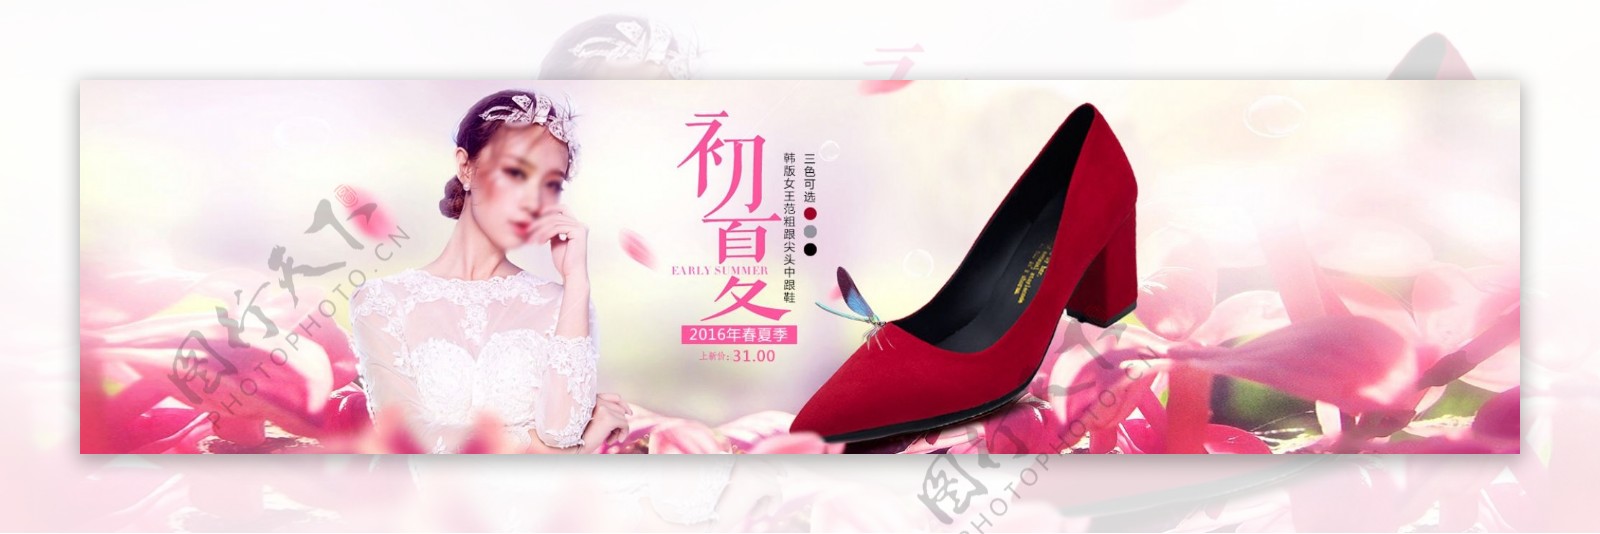 淘宝初夏女鞋促销海报设计PSD素材